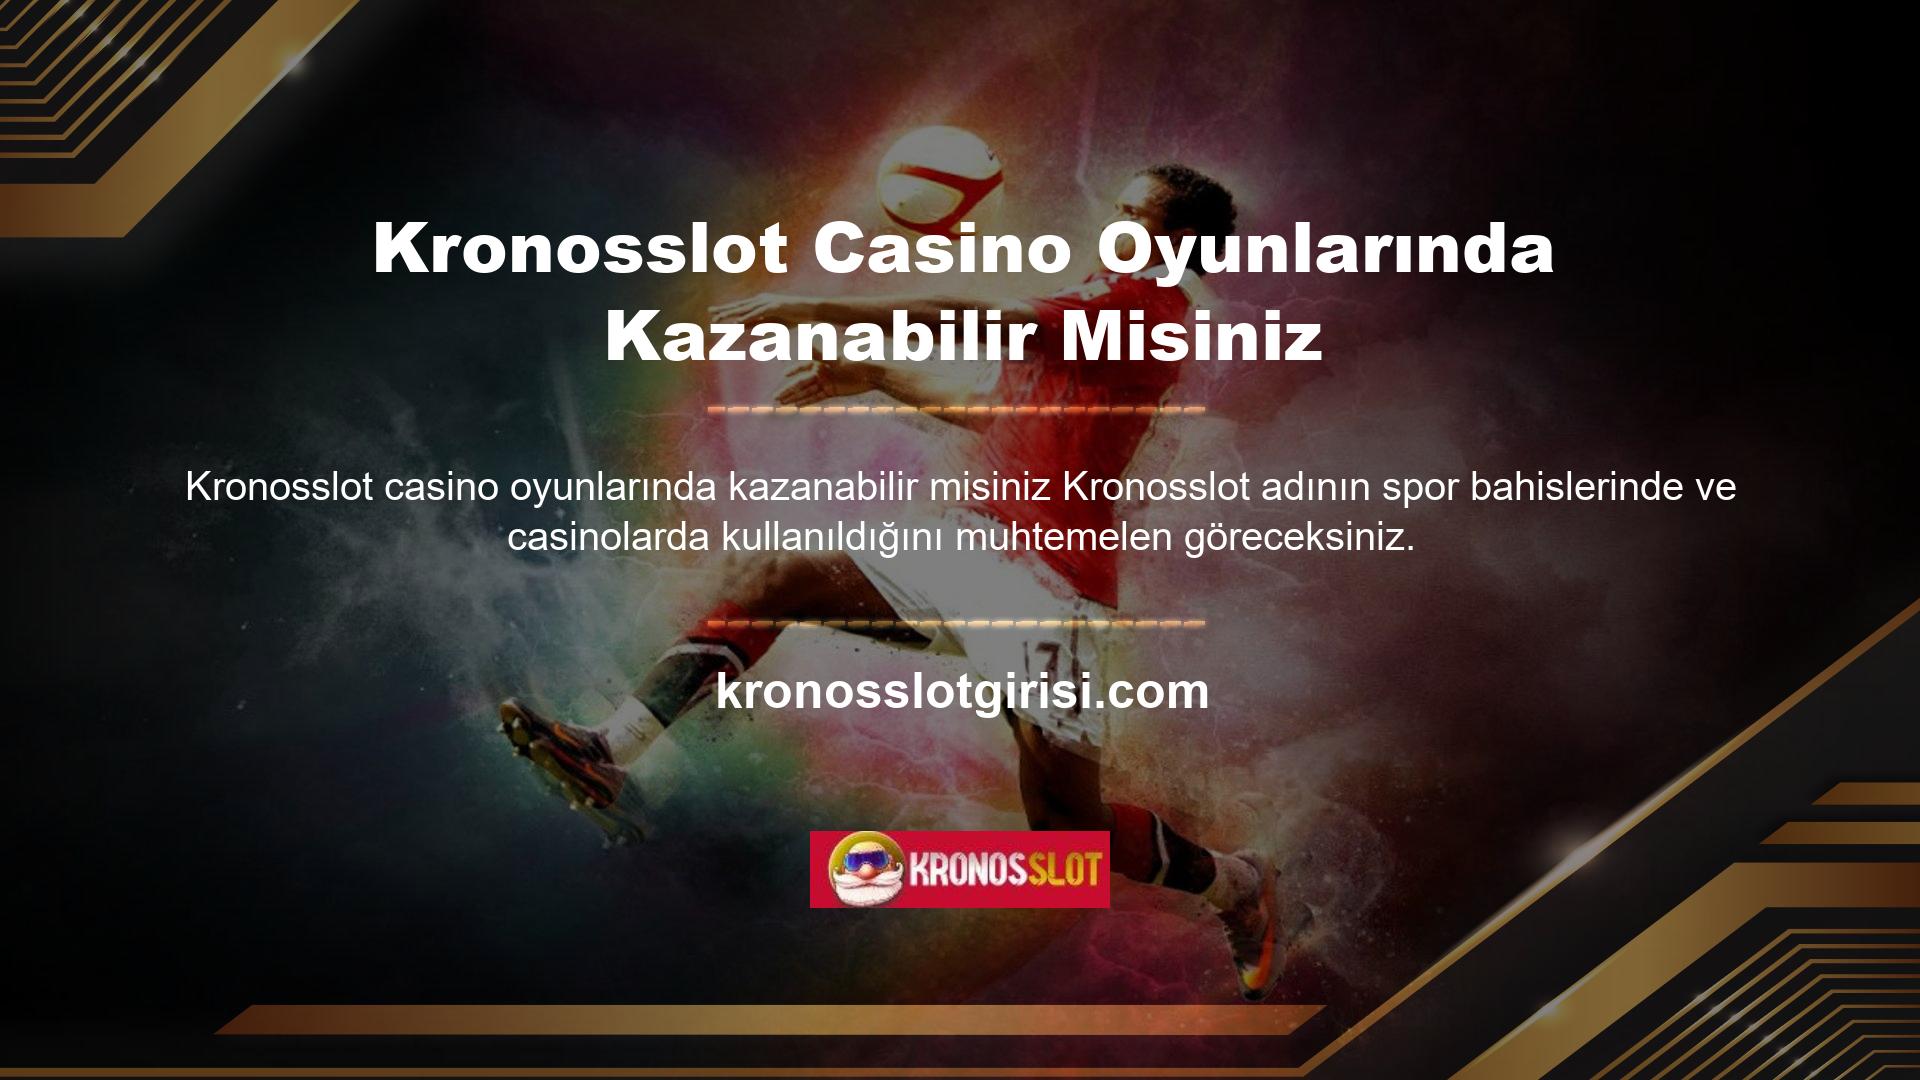 Spor bahislerinde bilindiği gibi Kronosslot casino oyunlarında da kazanmak mümkün olduğundan kazanma sorunu doğrudan casino ile ilgilidir